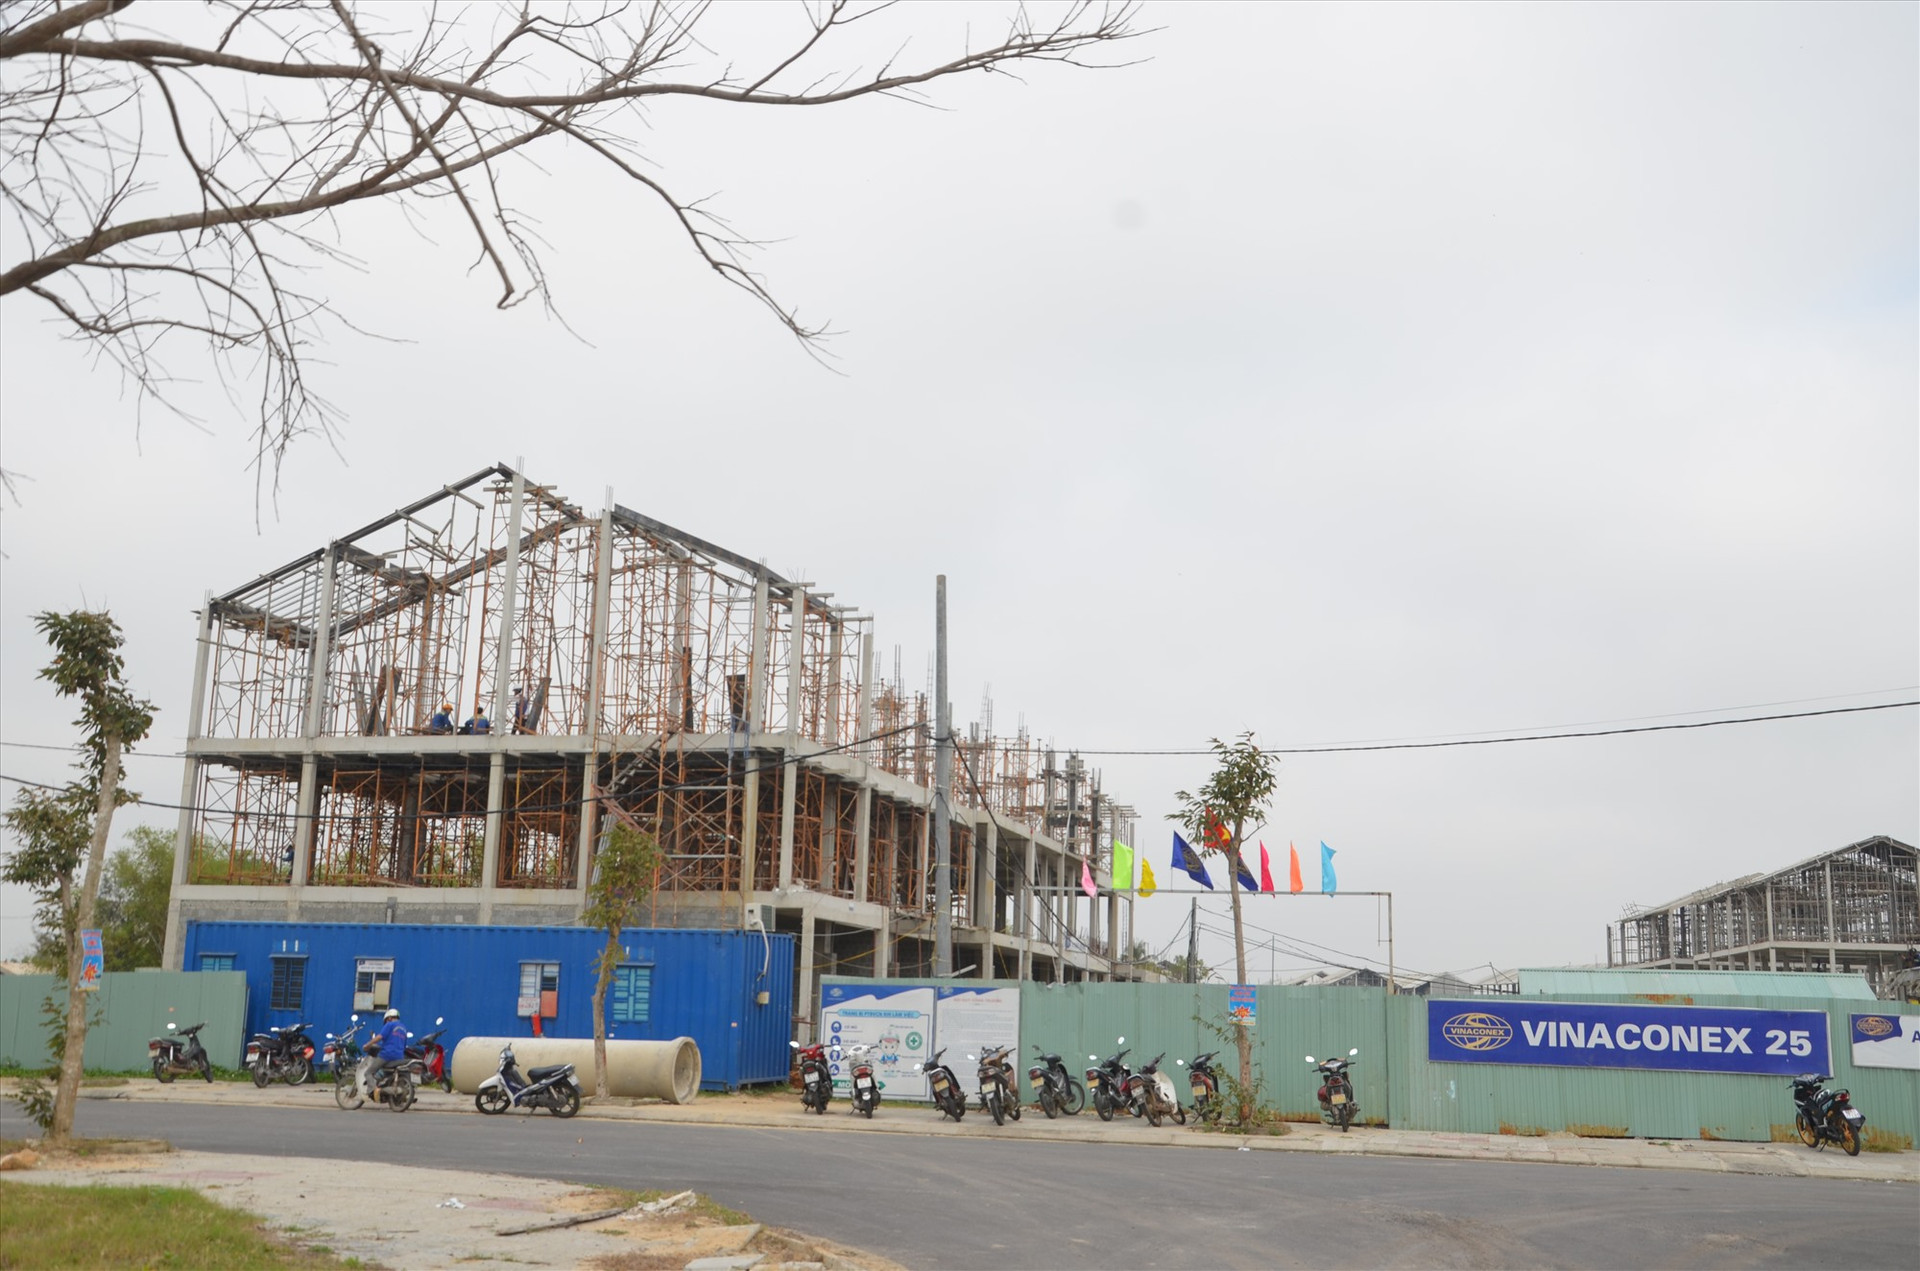 Nhà thầu Vinaconex 25 khẩn trương xây dựng dự án Homeland Paradise Village tại Khu đô thị mới Điện Nam - Điện Ngọc. Ảnh: T.B